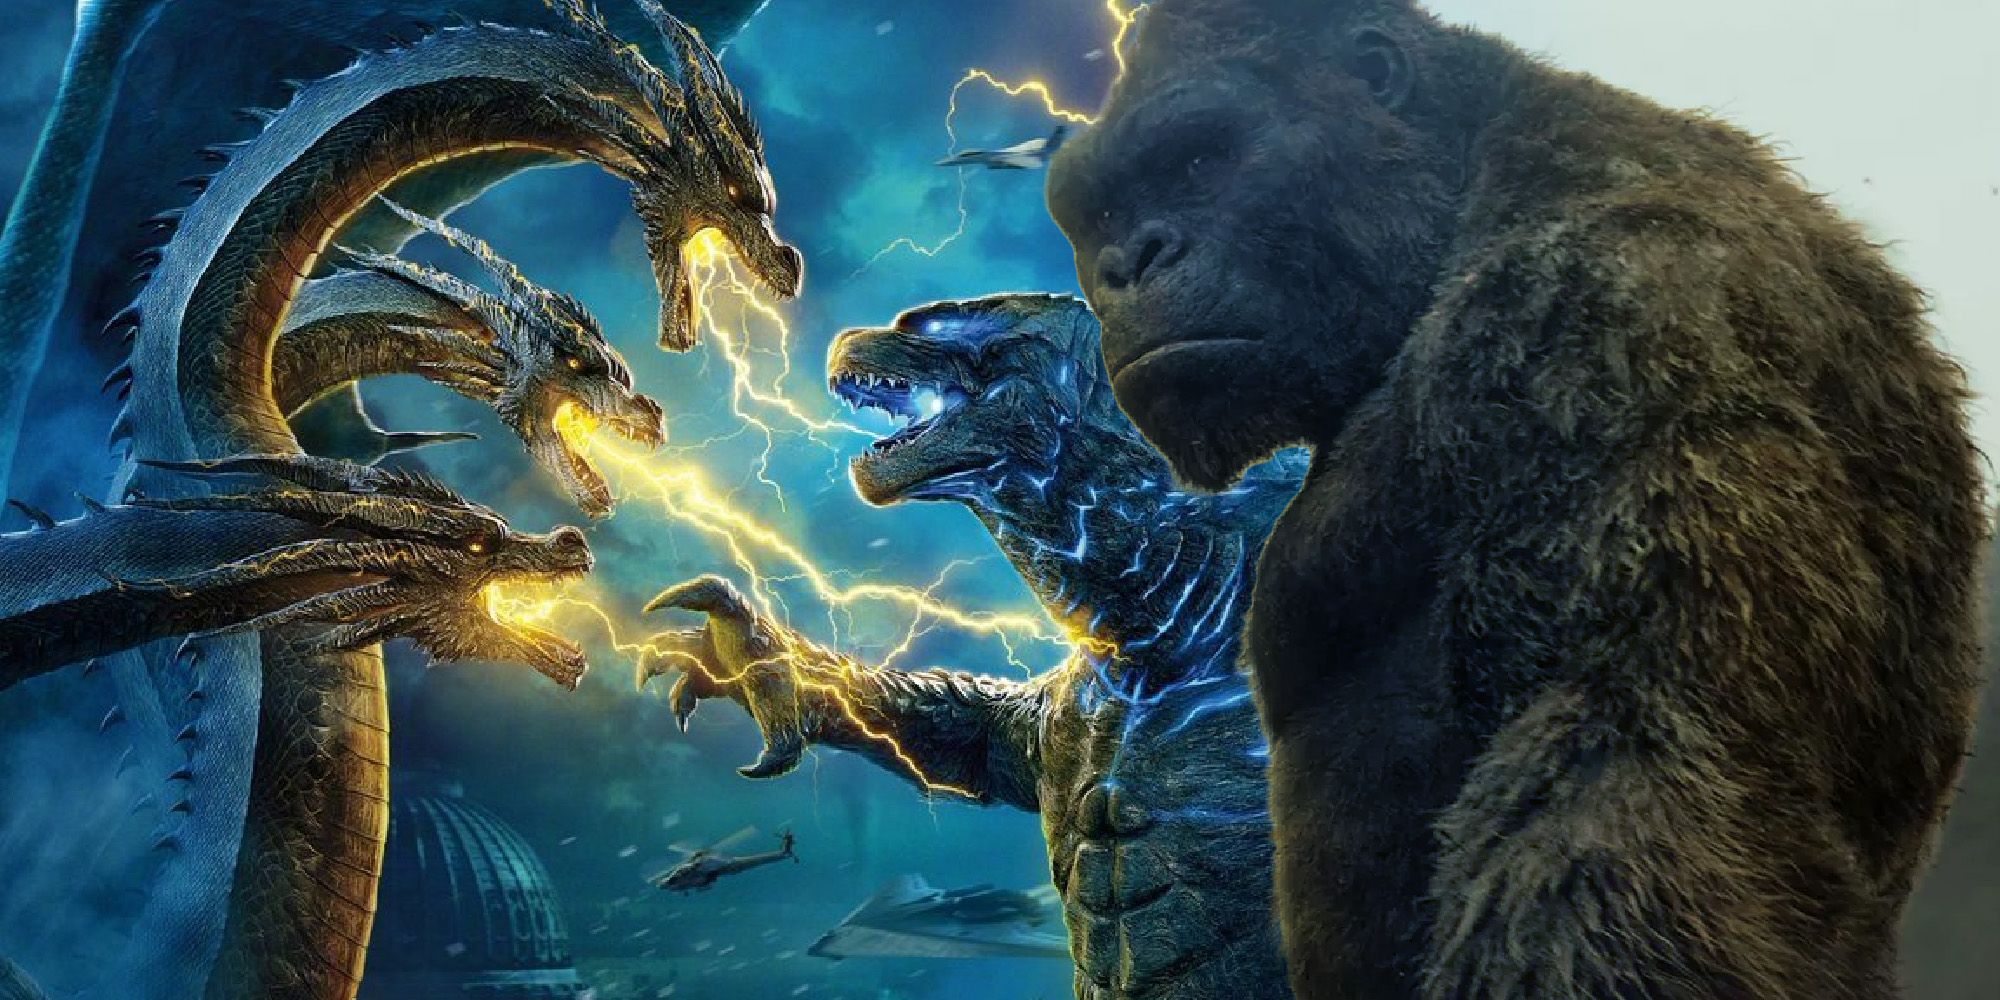 Teoría MonsterVerse: Godzilla y Kong se unen contra una amenaza alienígena